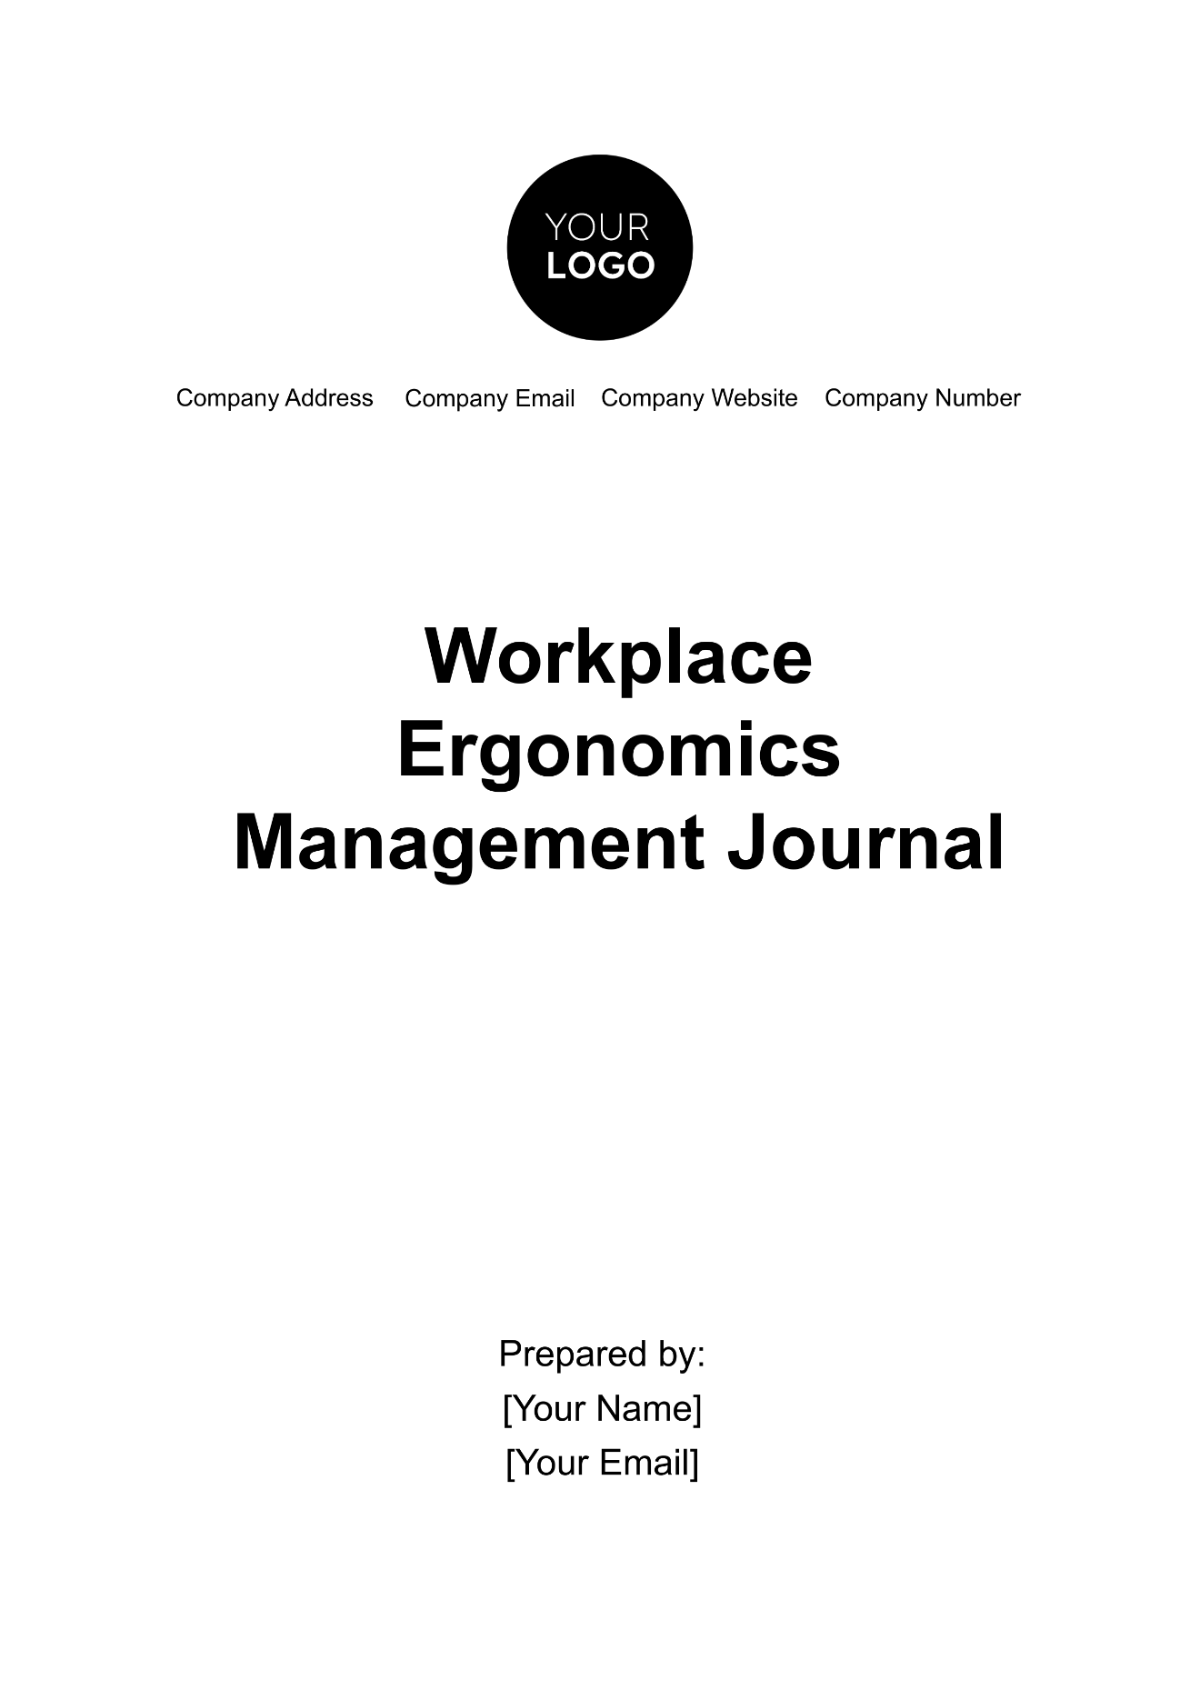 Workplace Ergonomics Management Journal Template